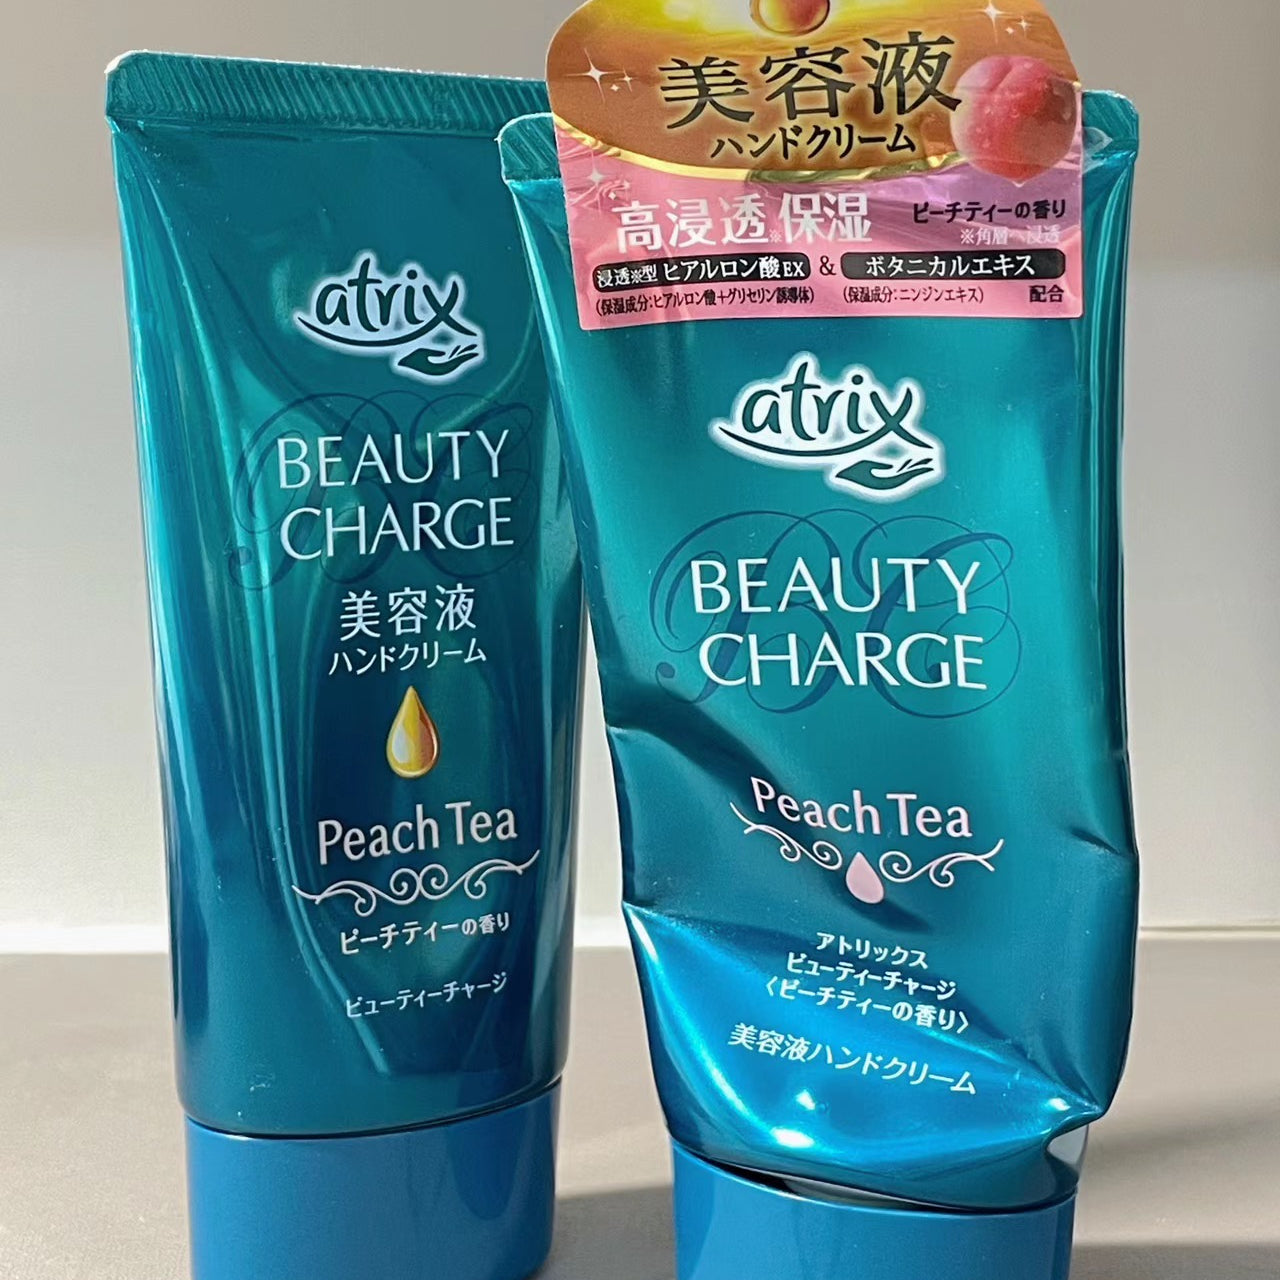 KAO ATRIX BEAUTY CHARGE Hand Cream (Peach Tea) 80g